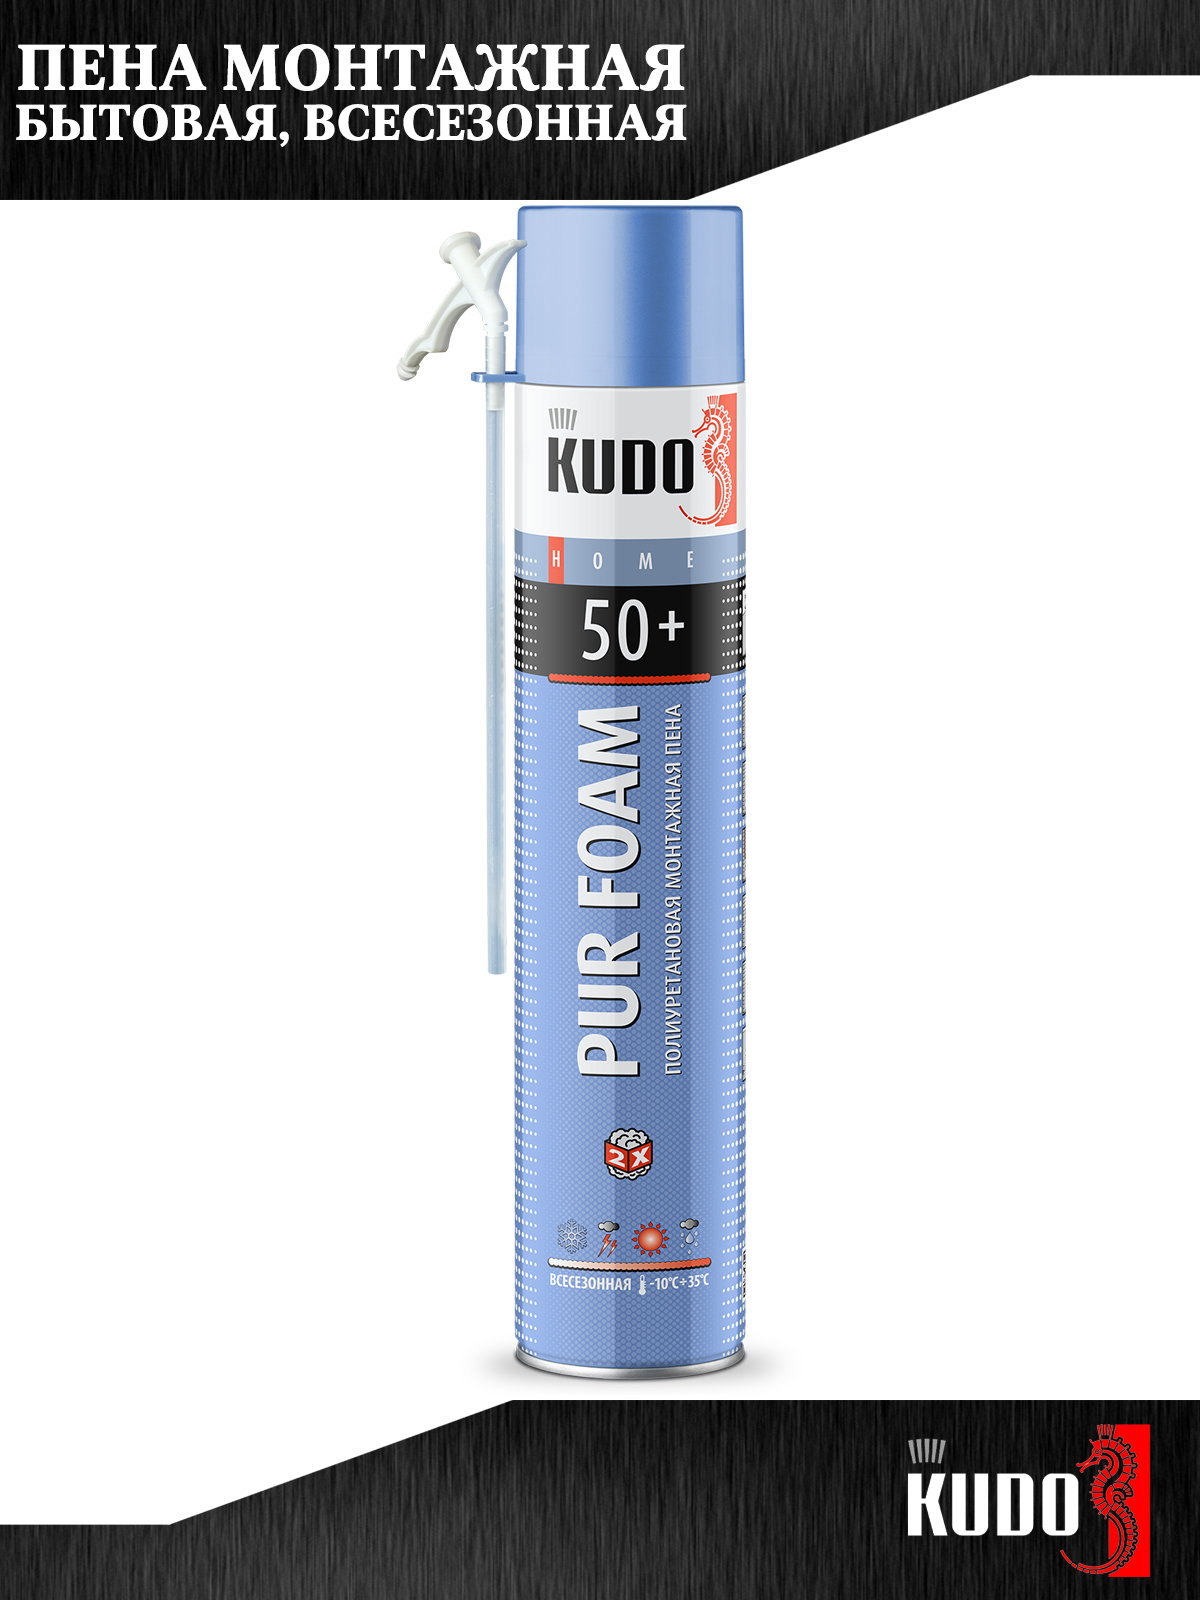 Монтажная пена KUDO PUR FOAM 50+, полиуретановая, всесезонная, до 50 л., 1000 мл, 3 шт.